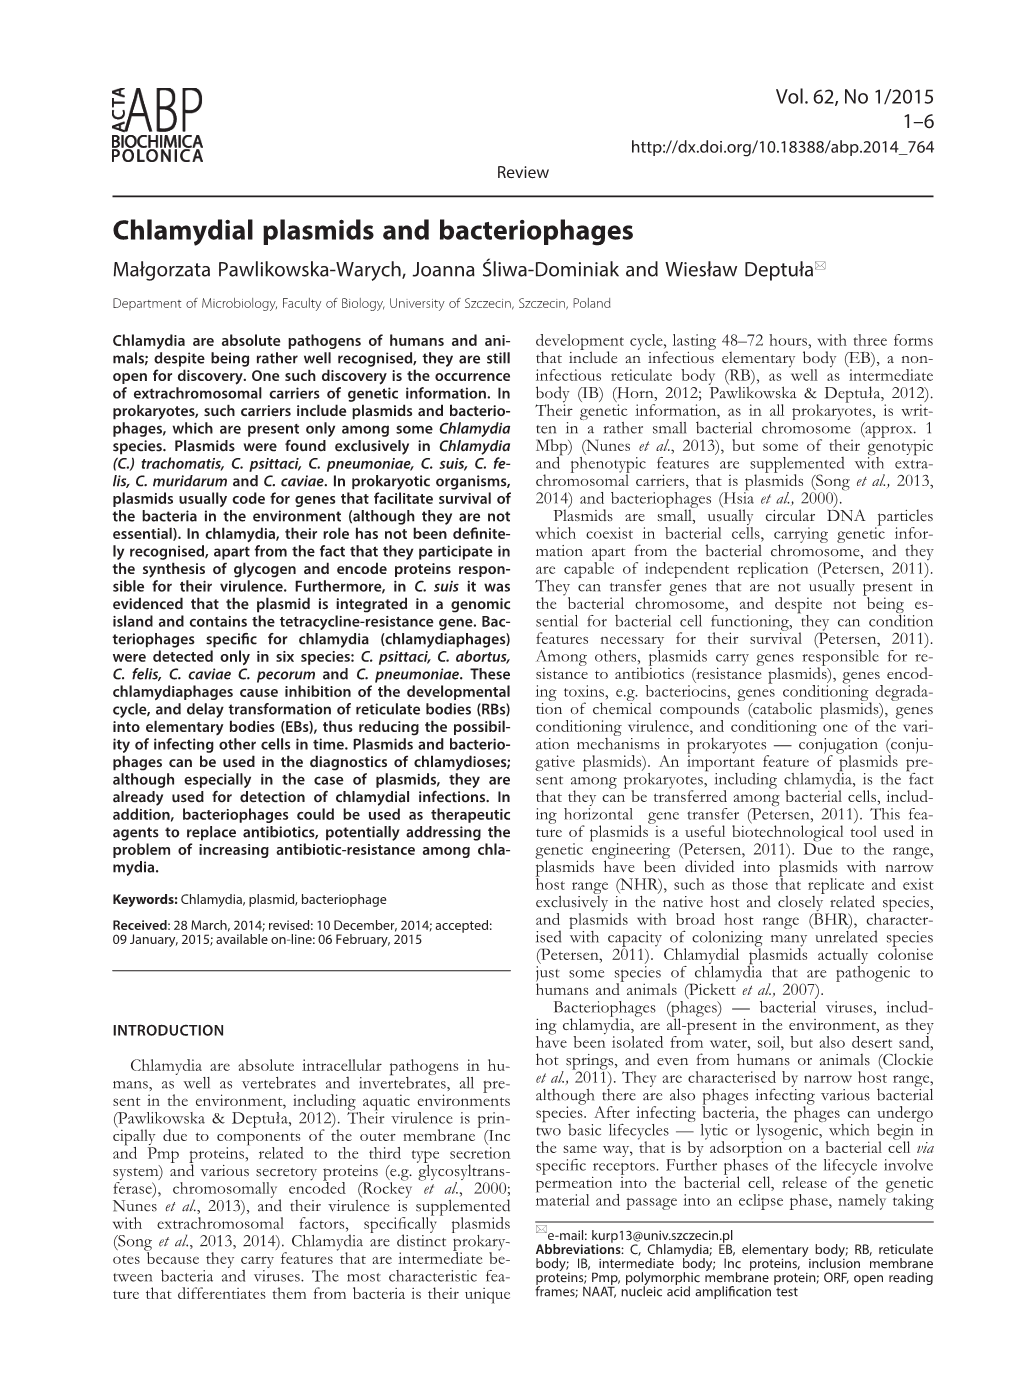 Chlamydial Plasmids and Bacteriophages Małgorzata Pawlikowska-Warych, Joanna Śliwa-Dominiak and Wiesław Deptuła*